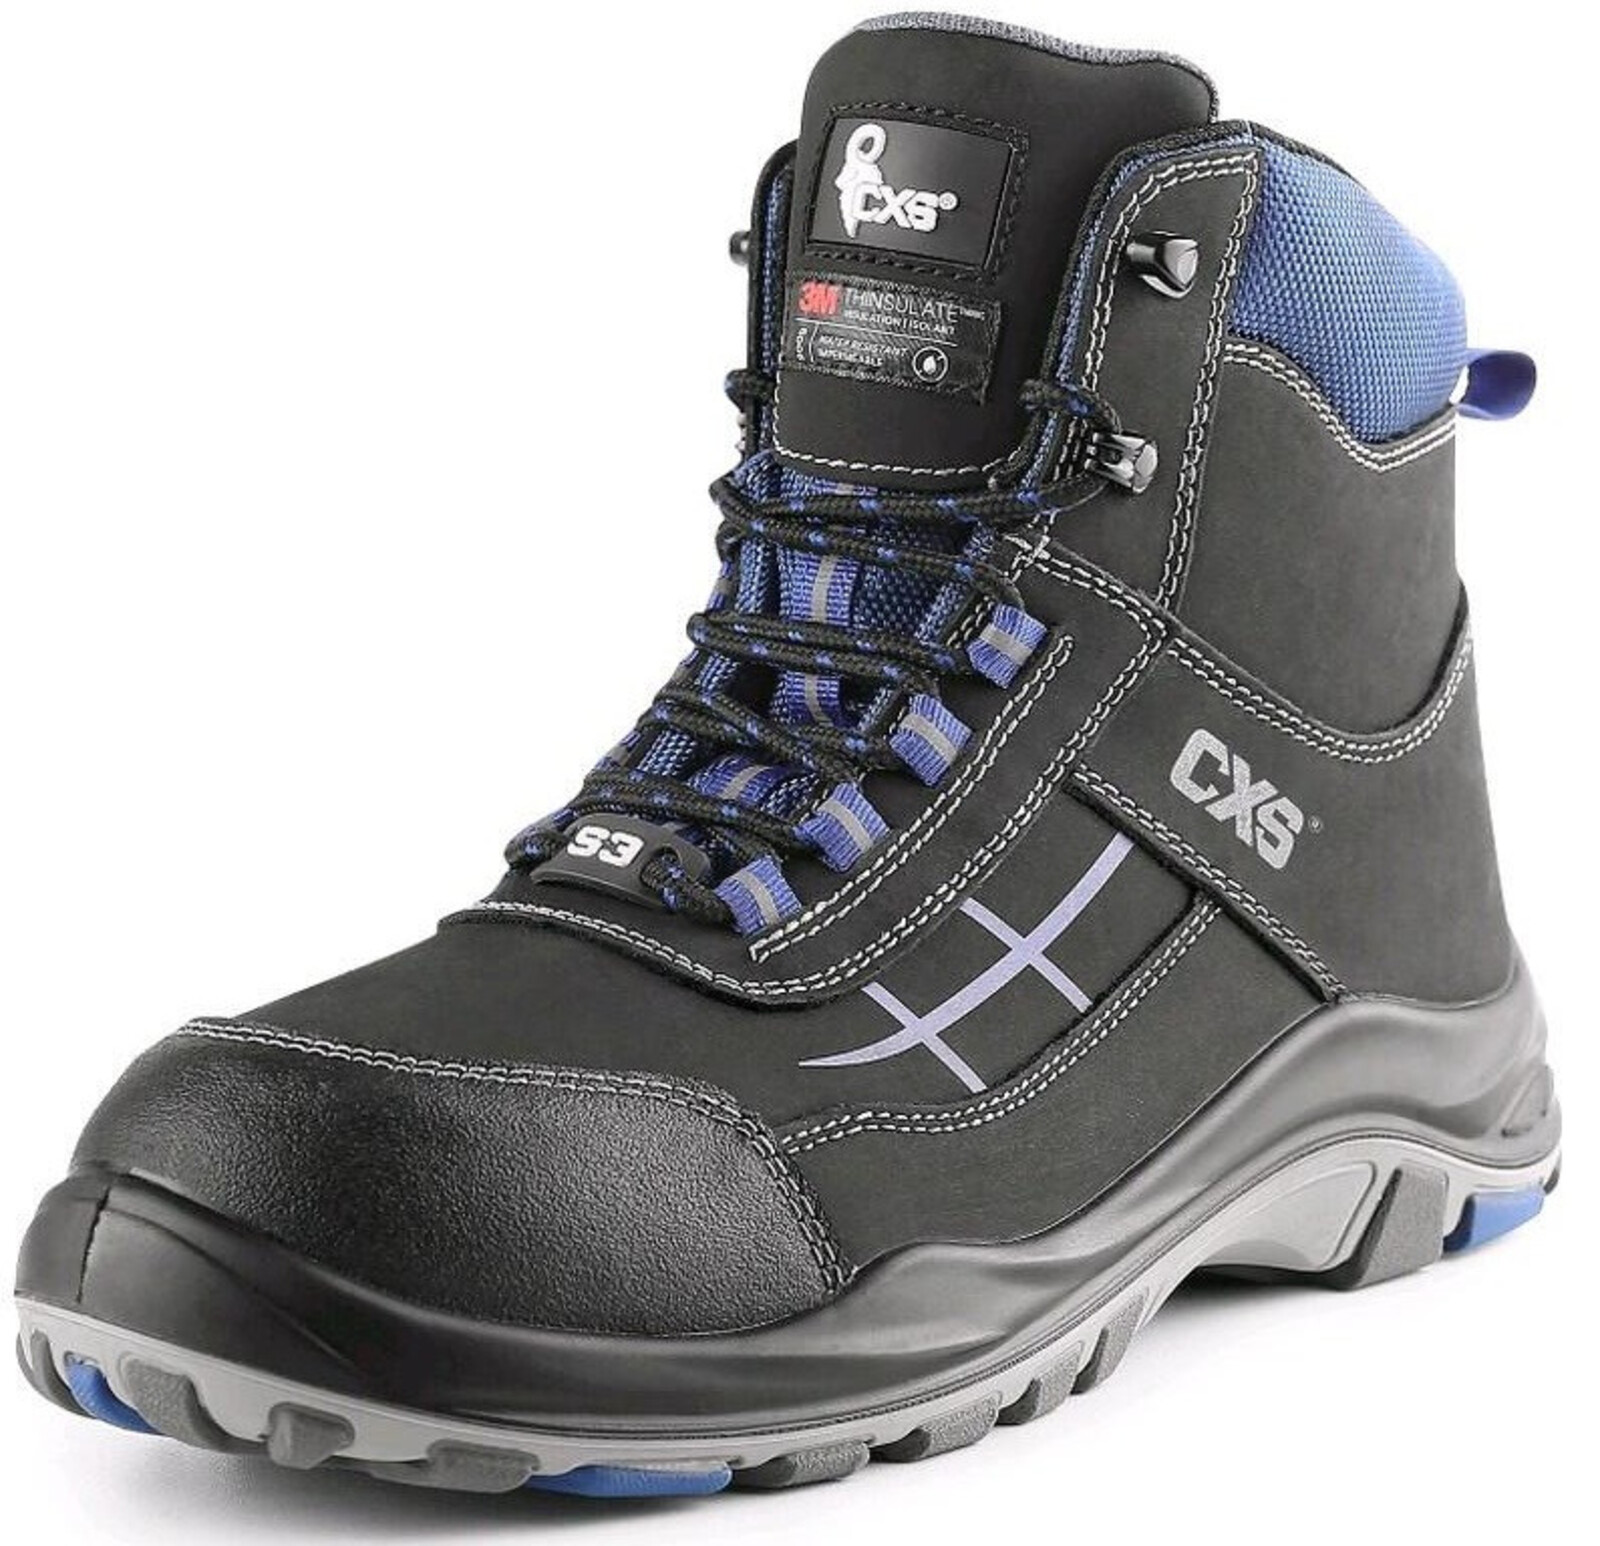 Zateplená bezpečnostná členková obuv CXS Dog Malamute S3 CI SRC - veľkosť: 47, farba: čierna/modrá